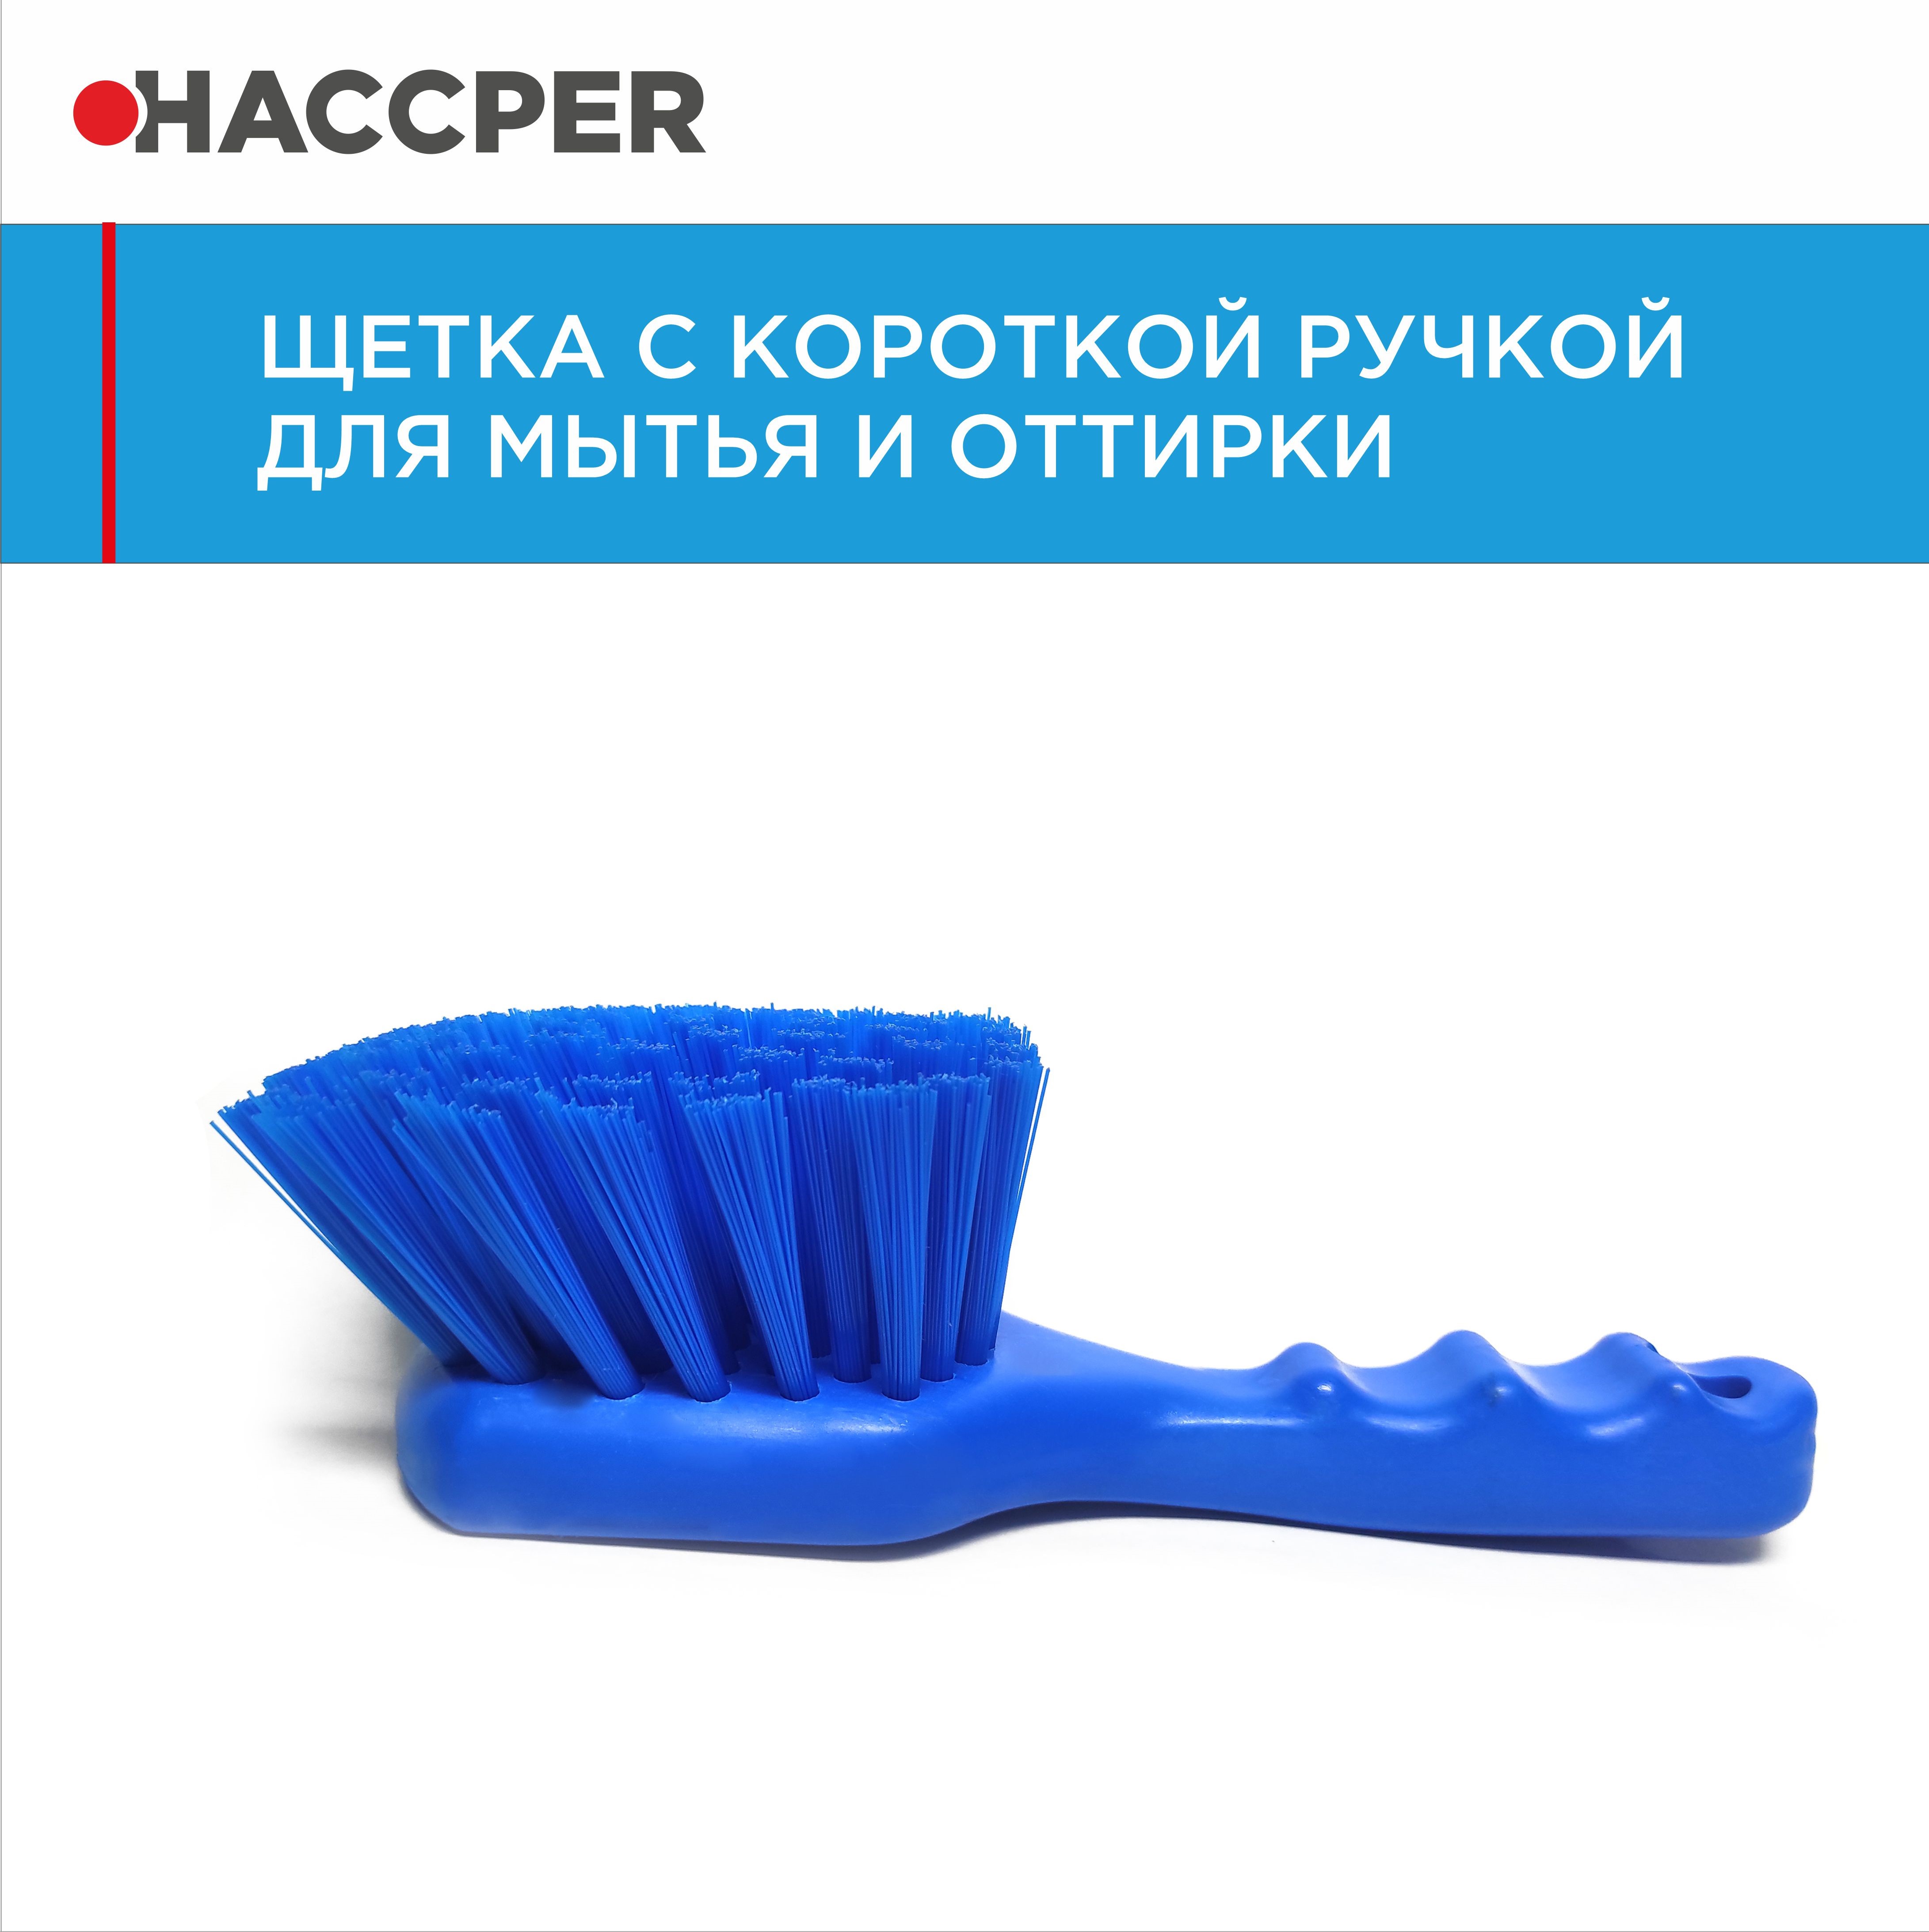 Щетка HACCPER с короткой ручкой для мытья и оттирки, жесткая, синяя